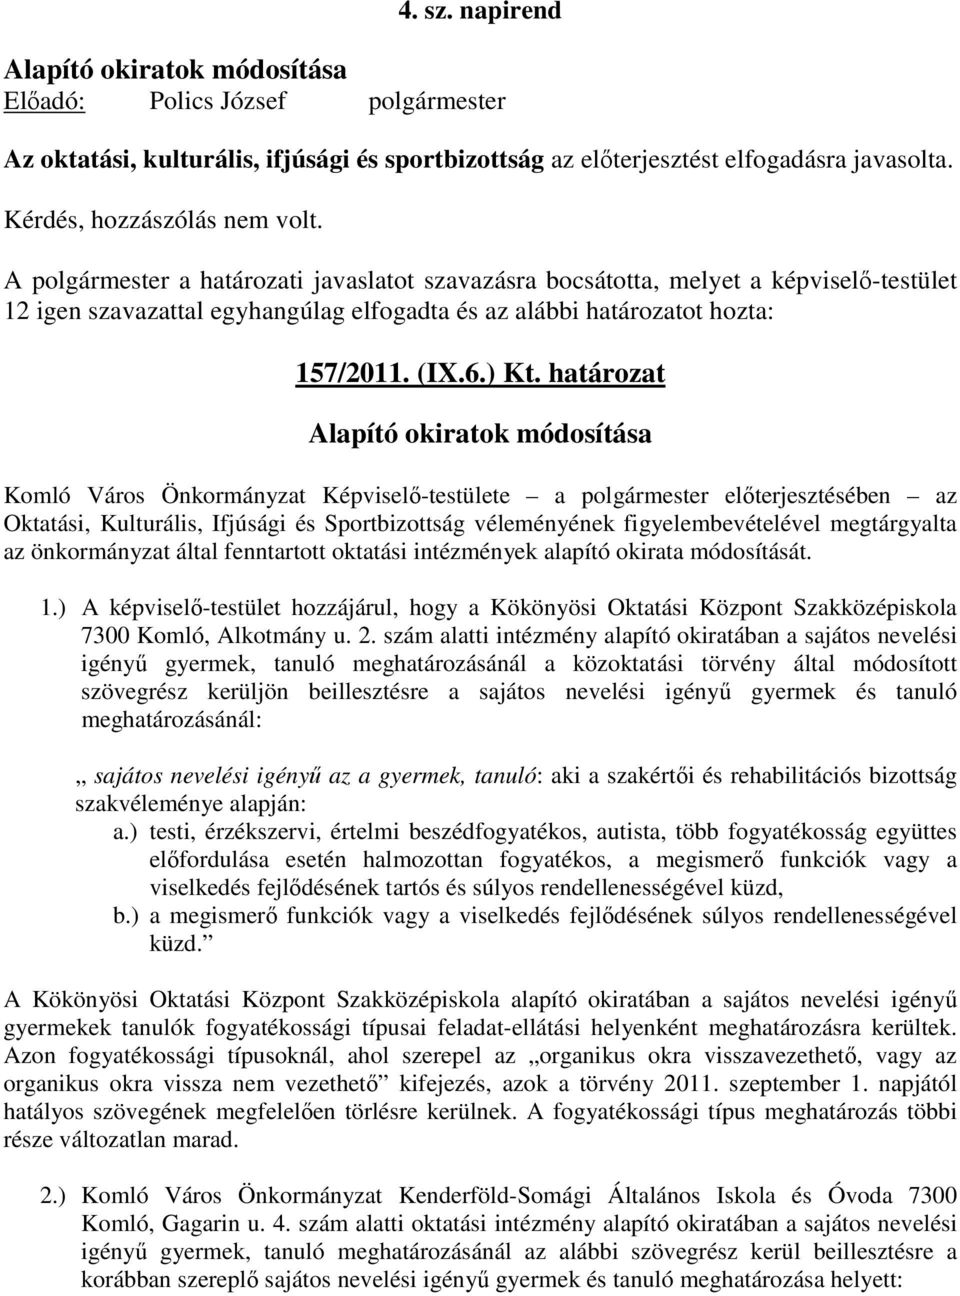 A polgármester a határozati javaslatot szavazásra bocsátotta, melyet a képviselı-testület 12 igen szavazattal egyhangúlag elfogadta és az alábbi határozatot hozta: 157/2011. (IX.6.) Kt.